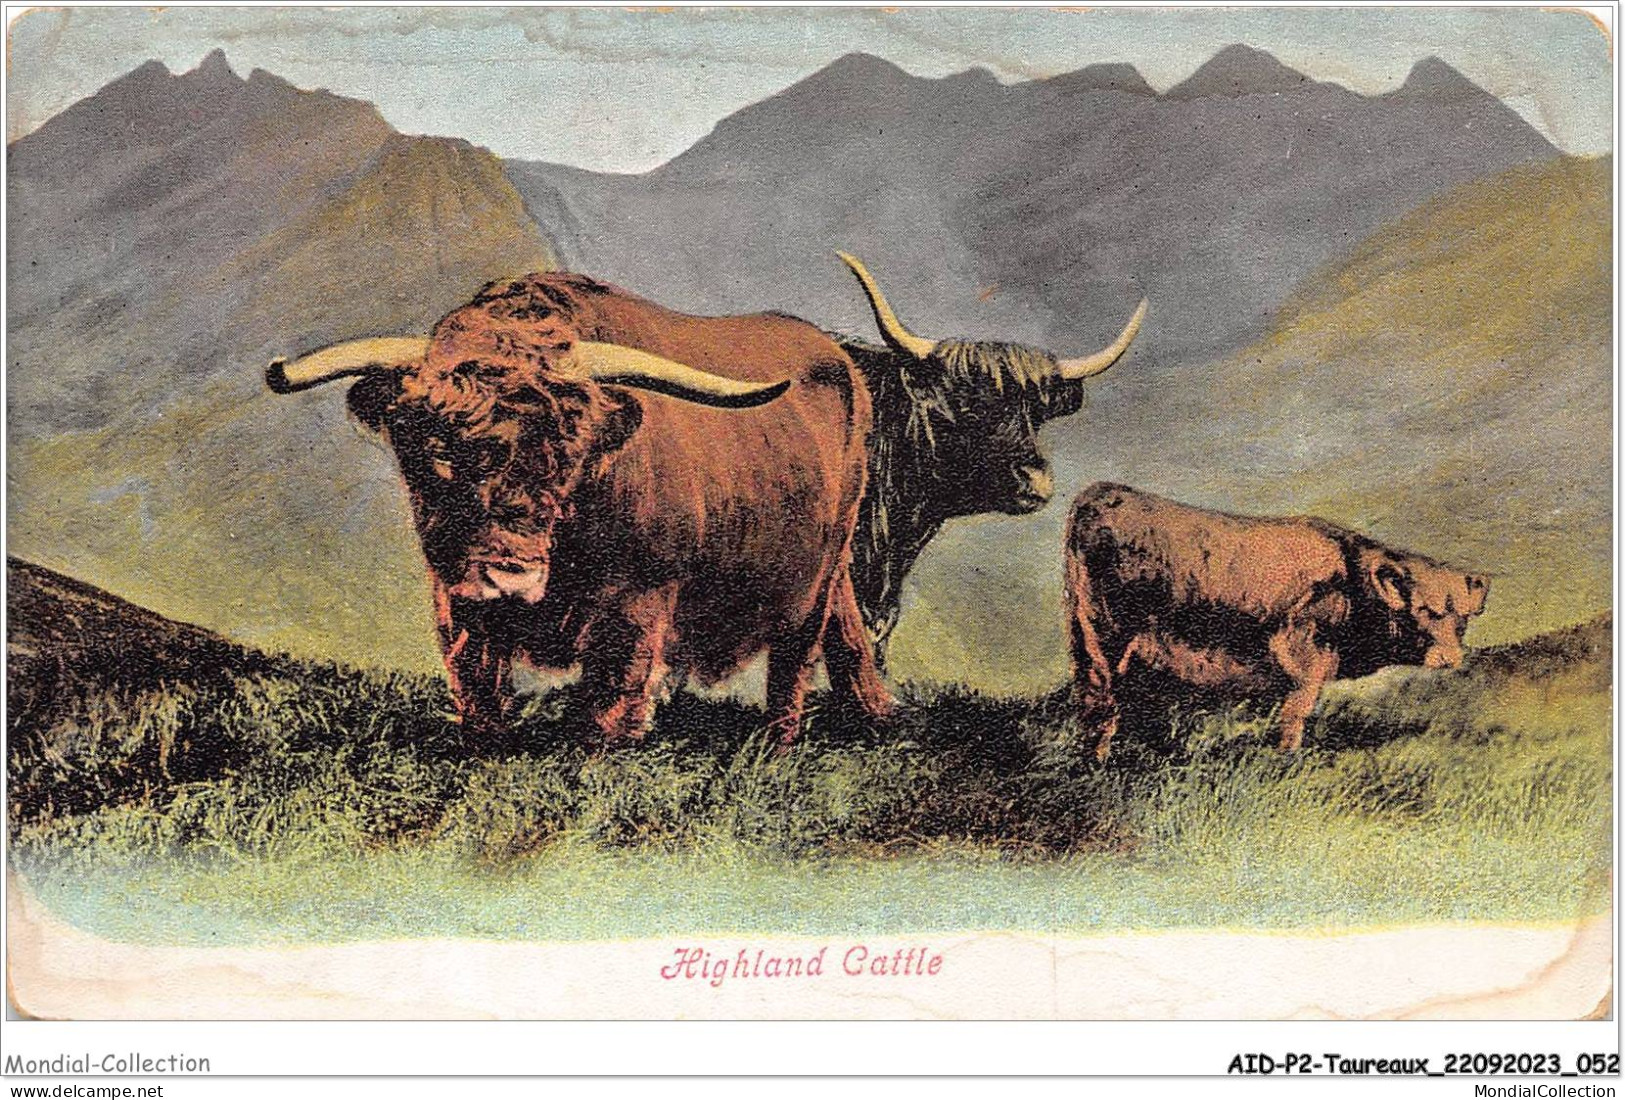 AIDP2-TAUREAUX-0100 - Highland Cattle  - Bull